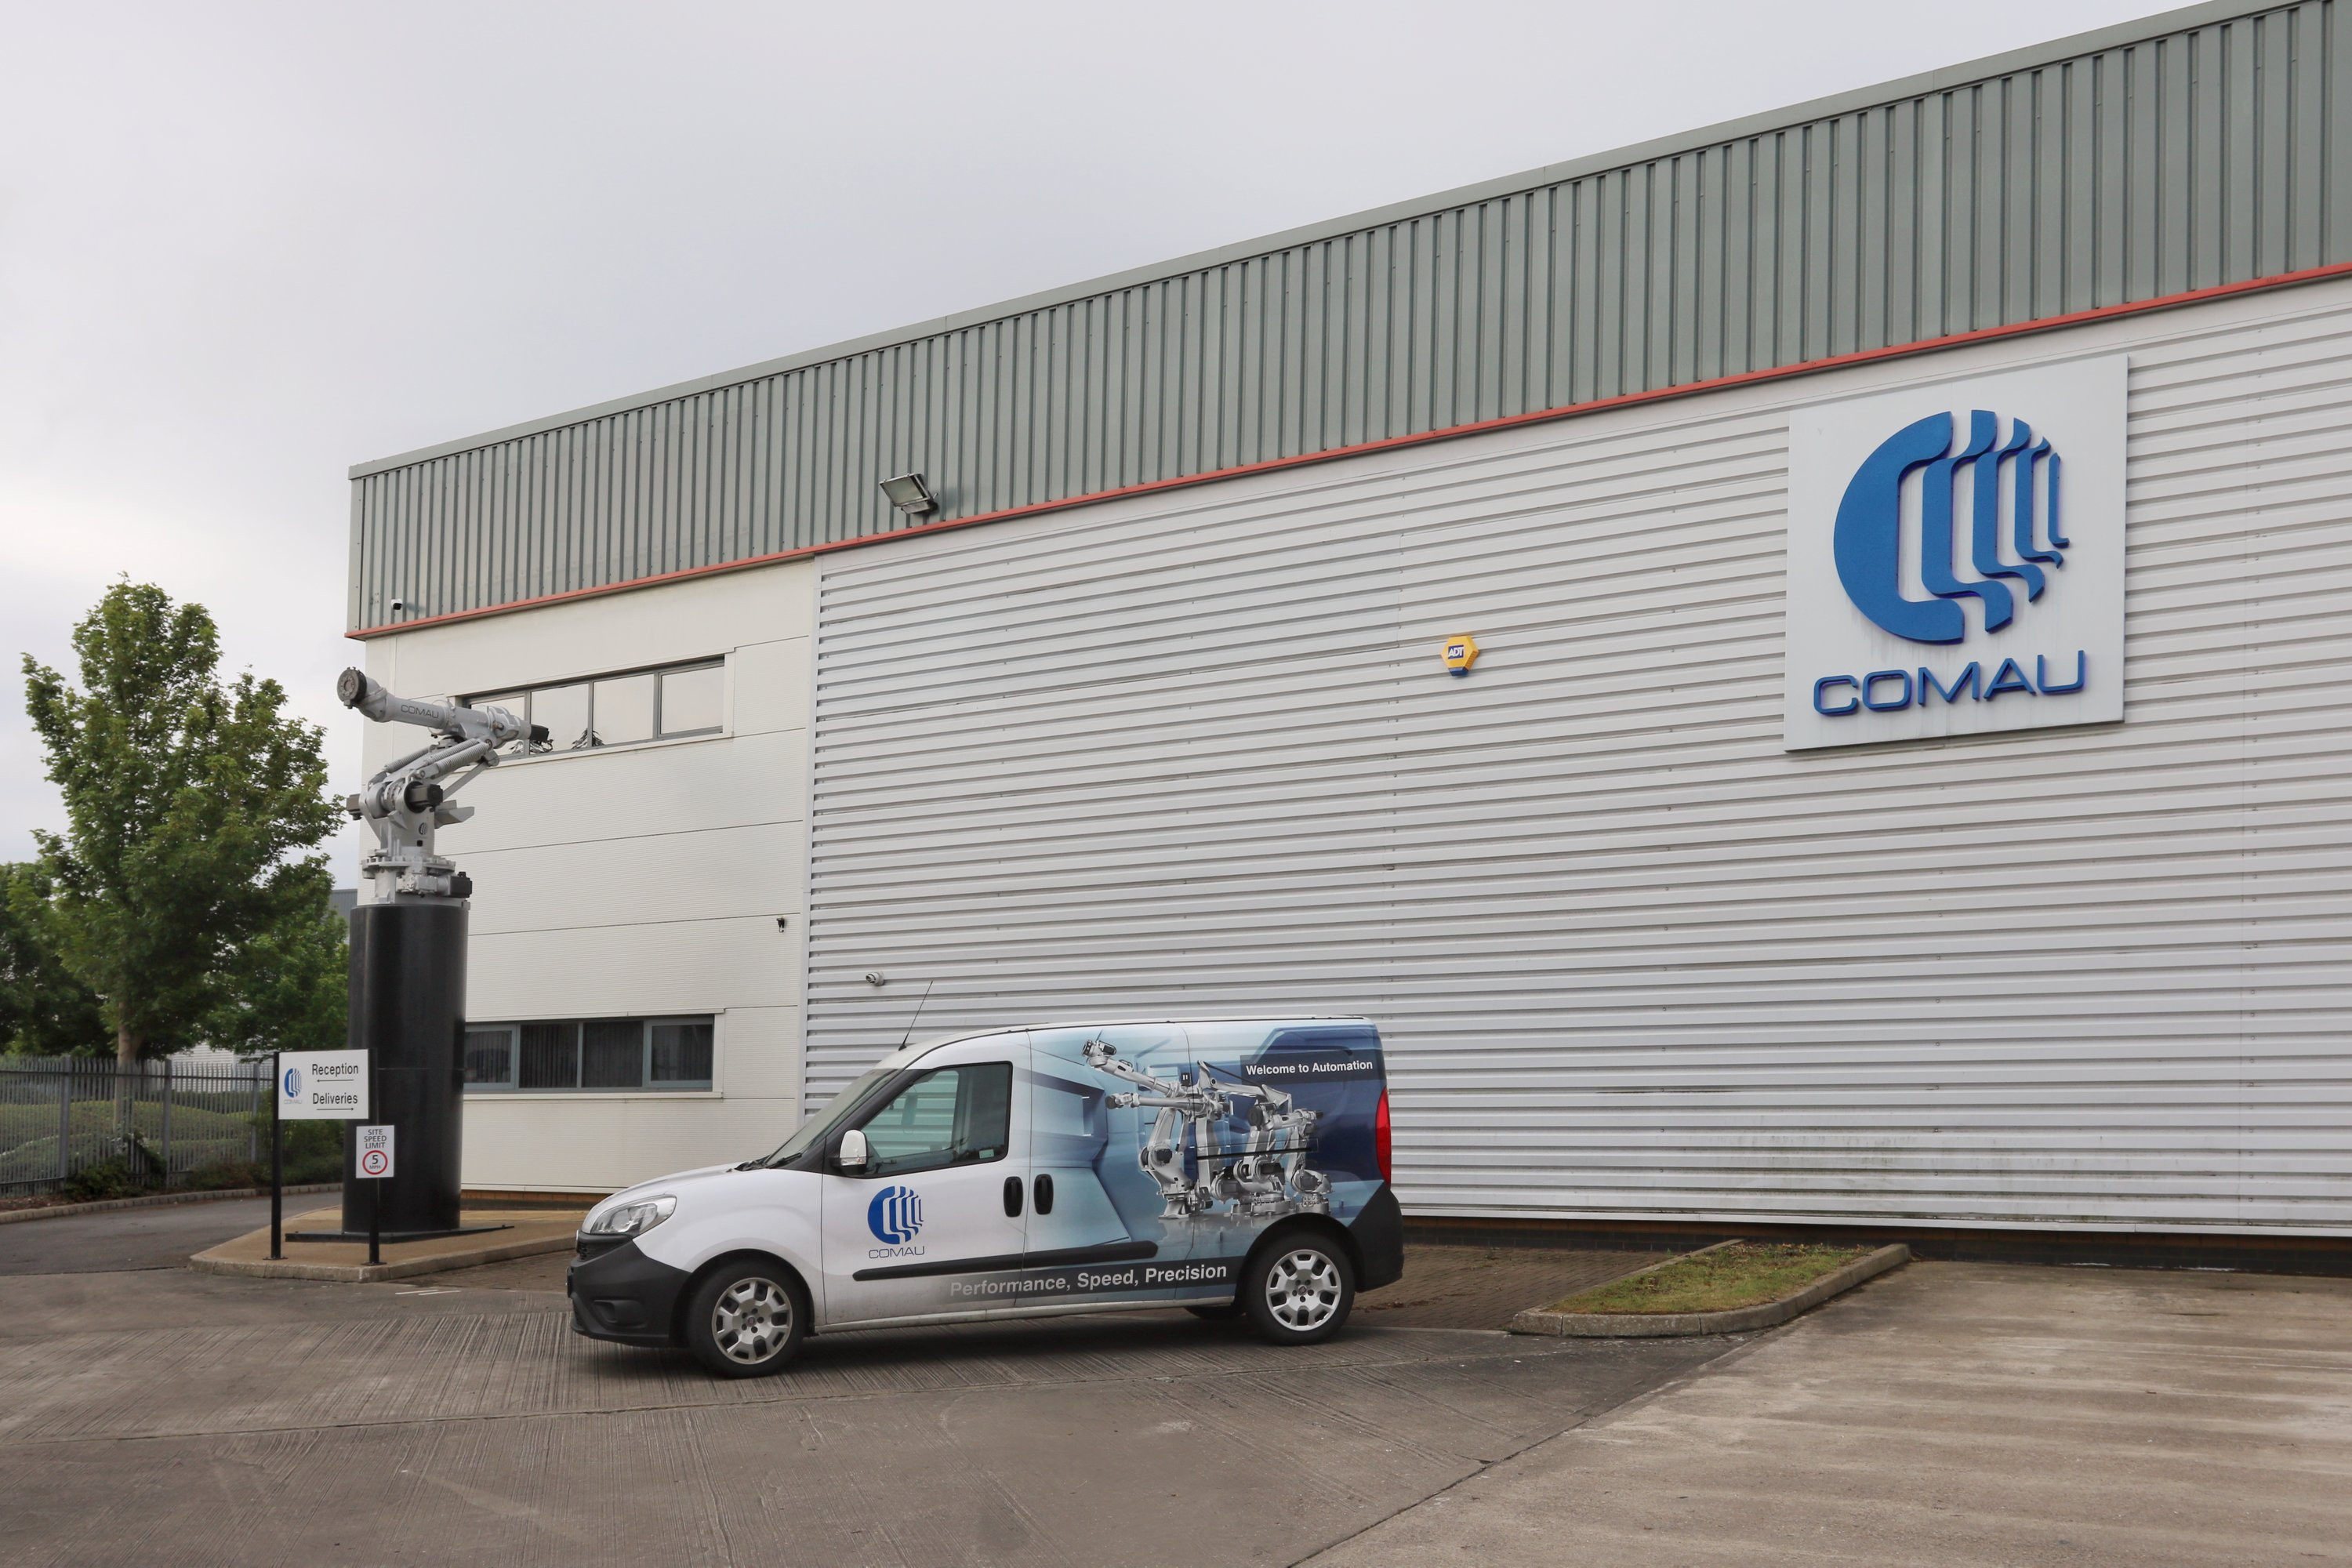 Comau UK facility in Gateshead